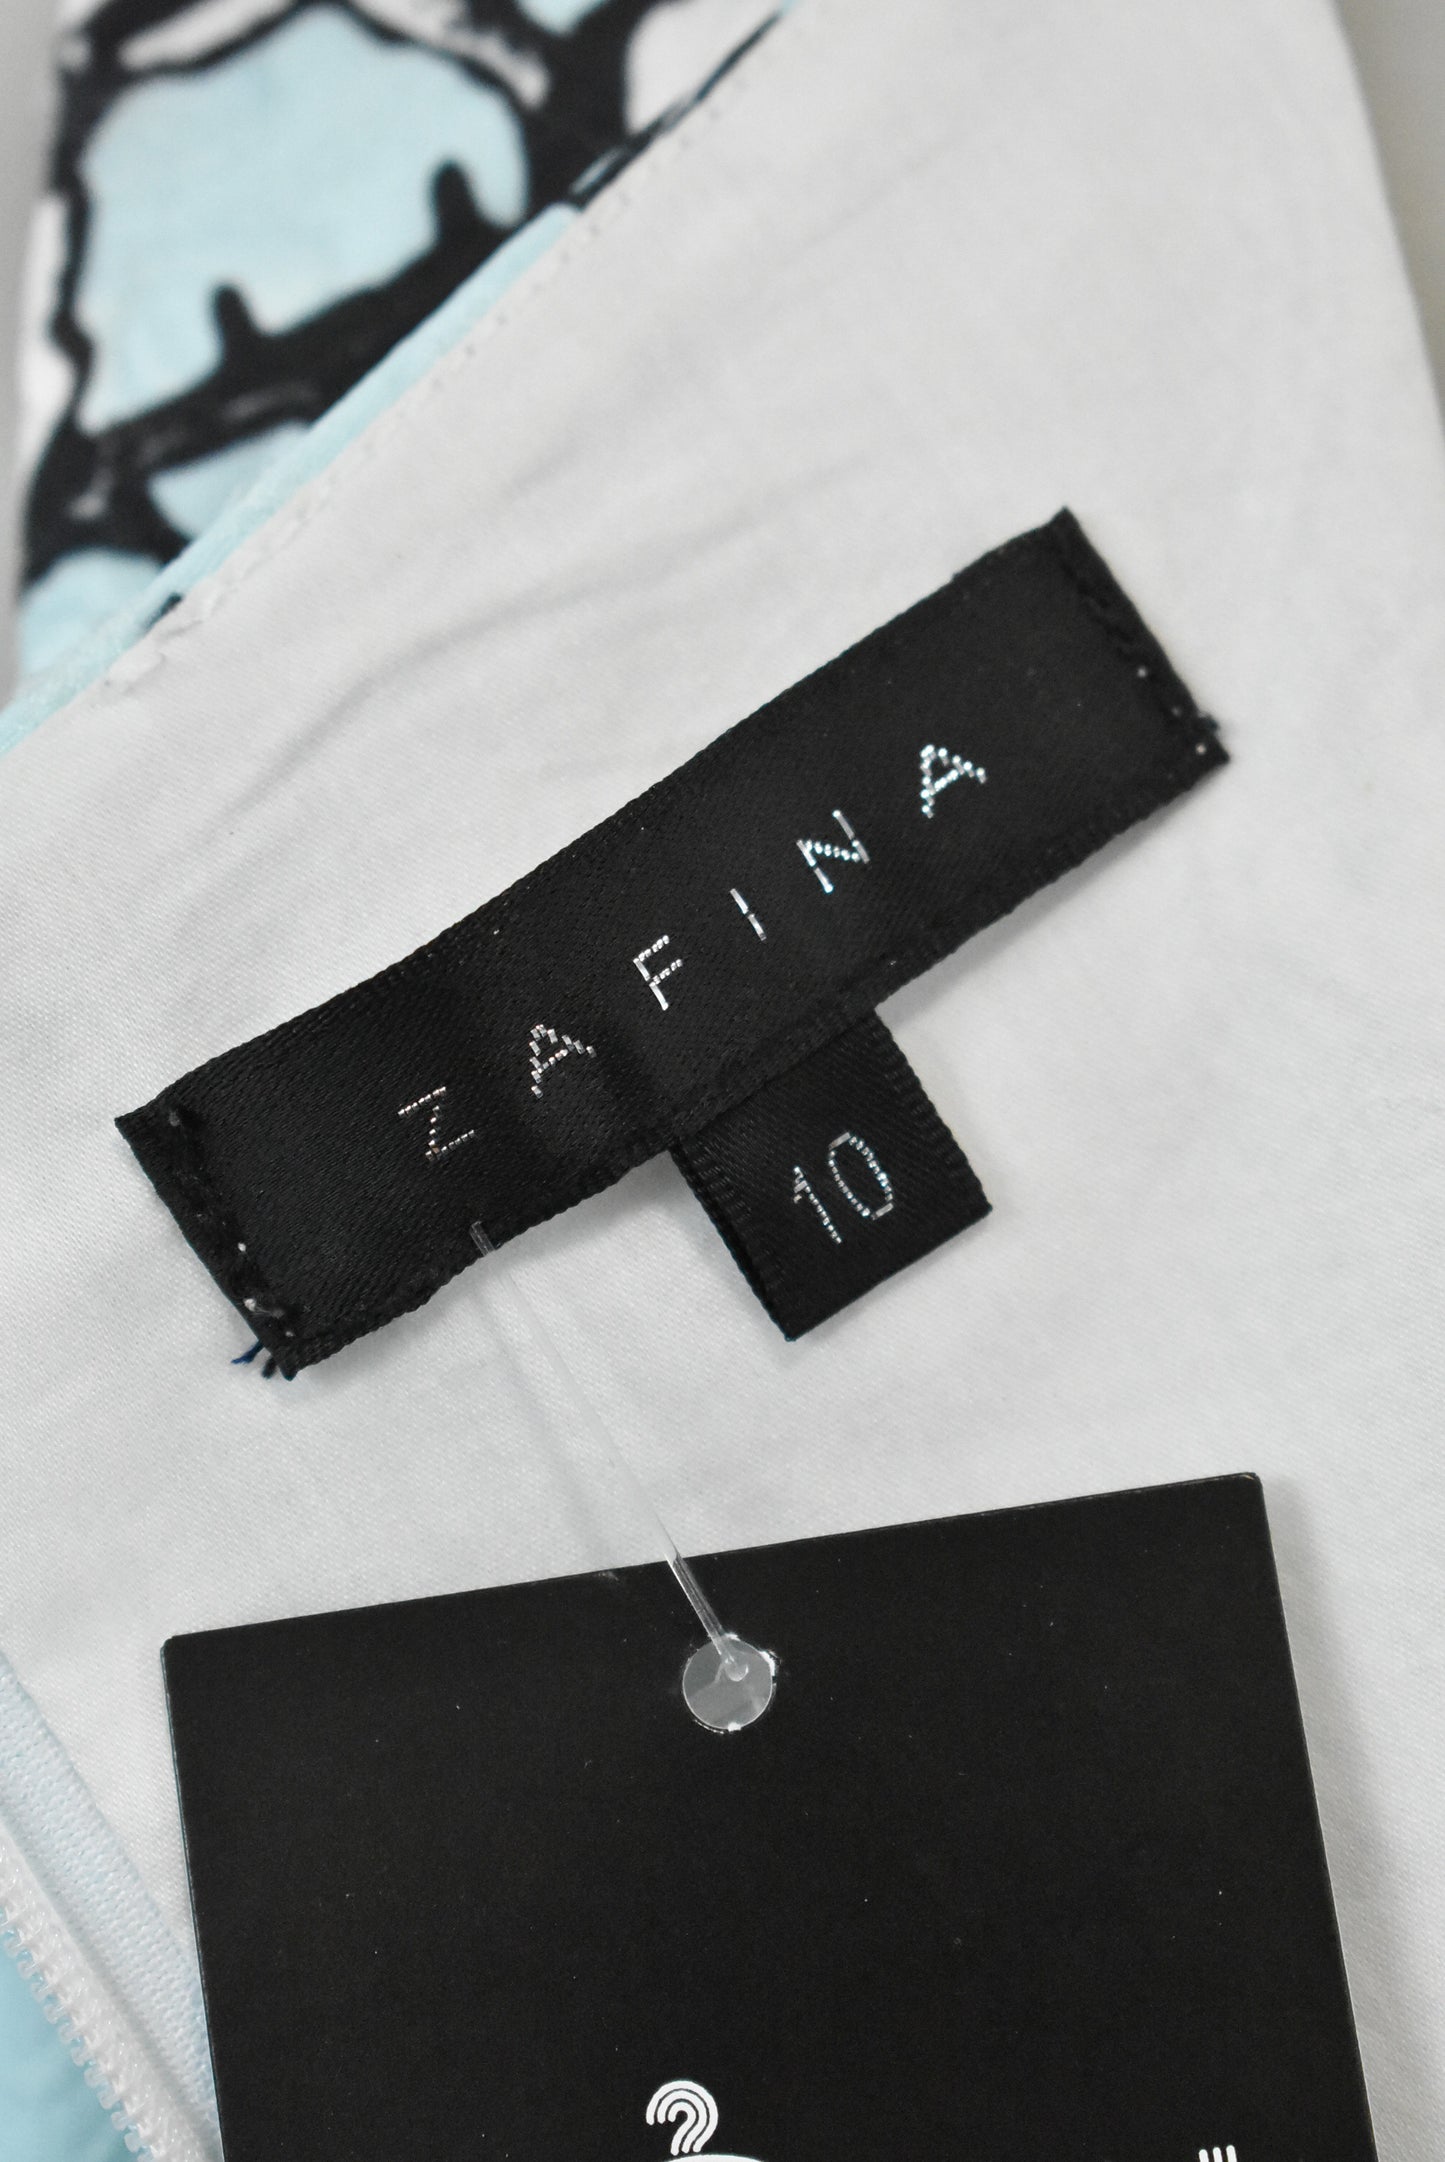 Zafina shift dress, 10